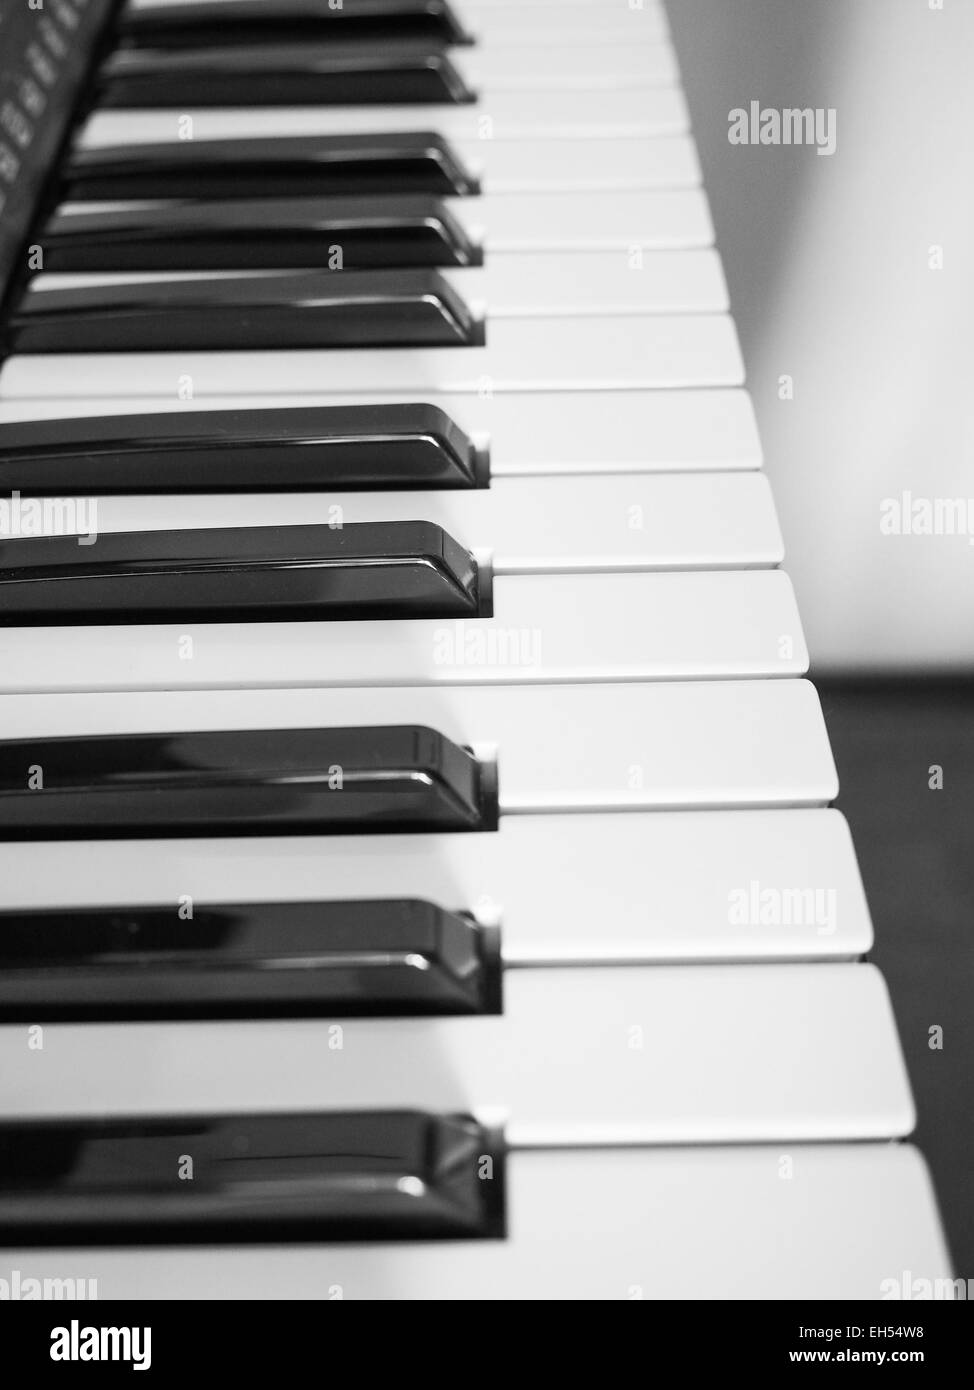 Dettaglio del bianco e del nero i tasti sulla tastiera musicale Foto Stock